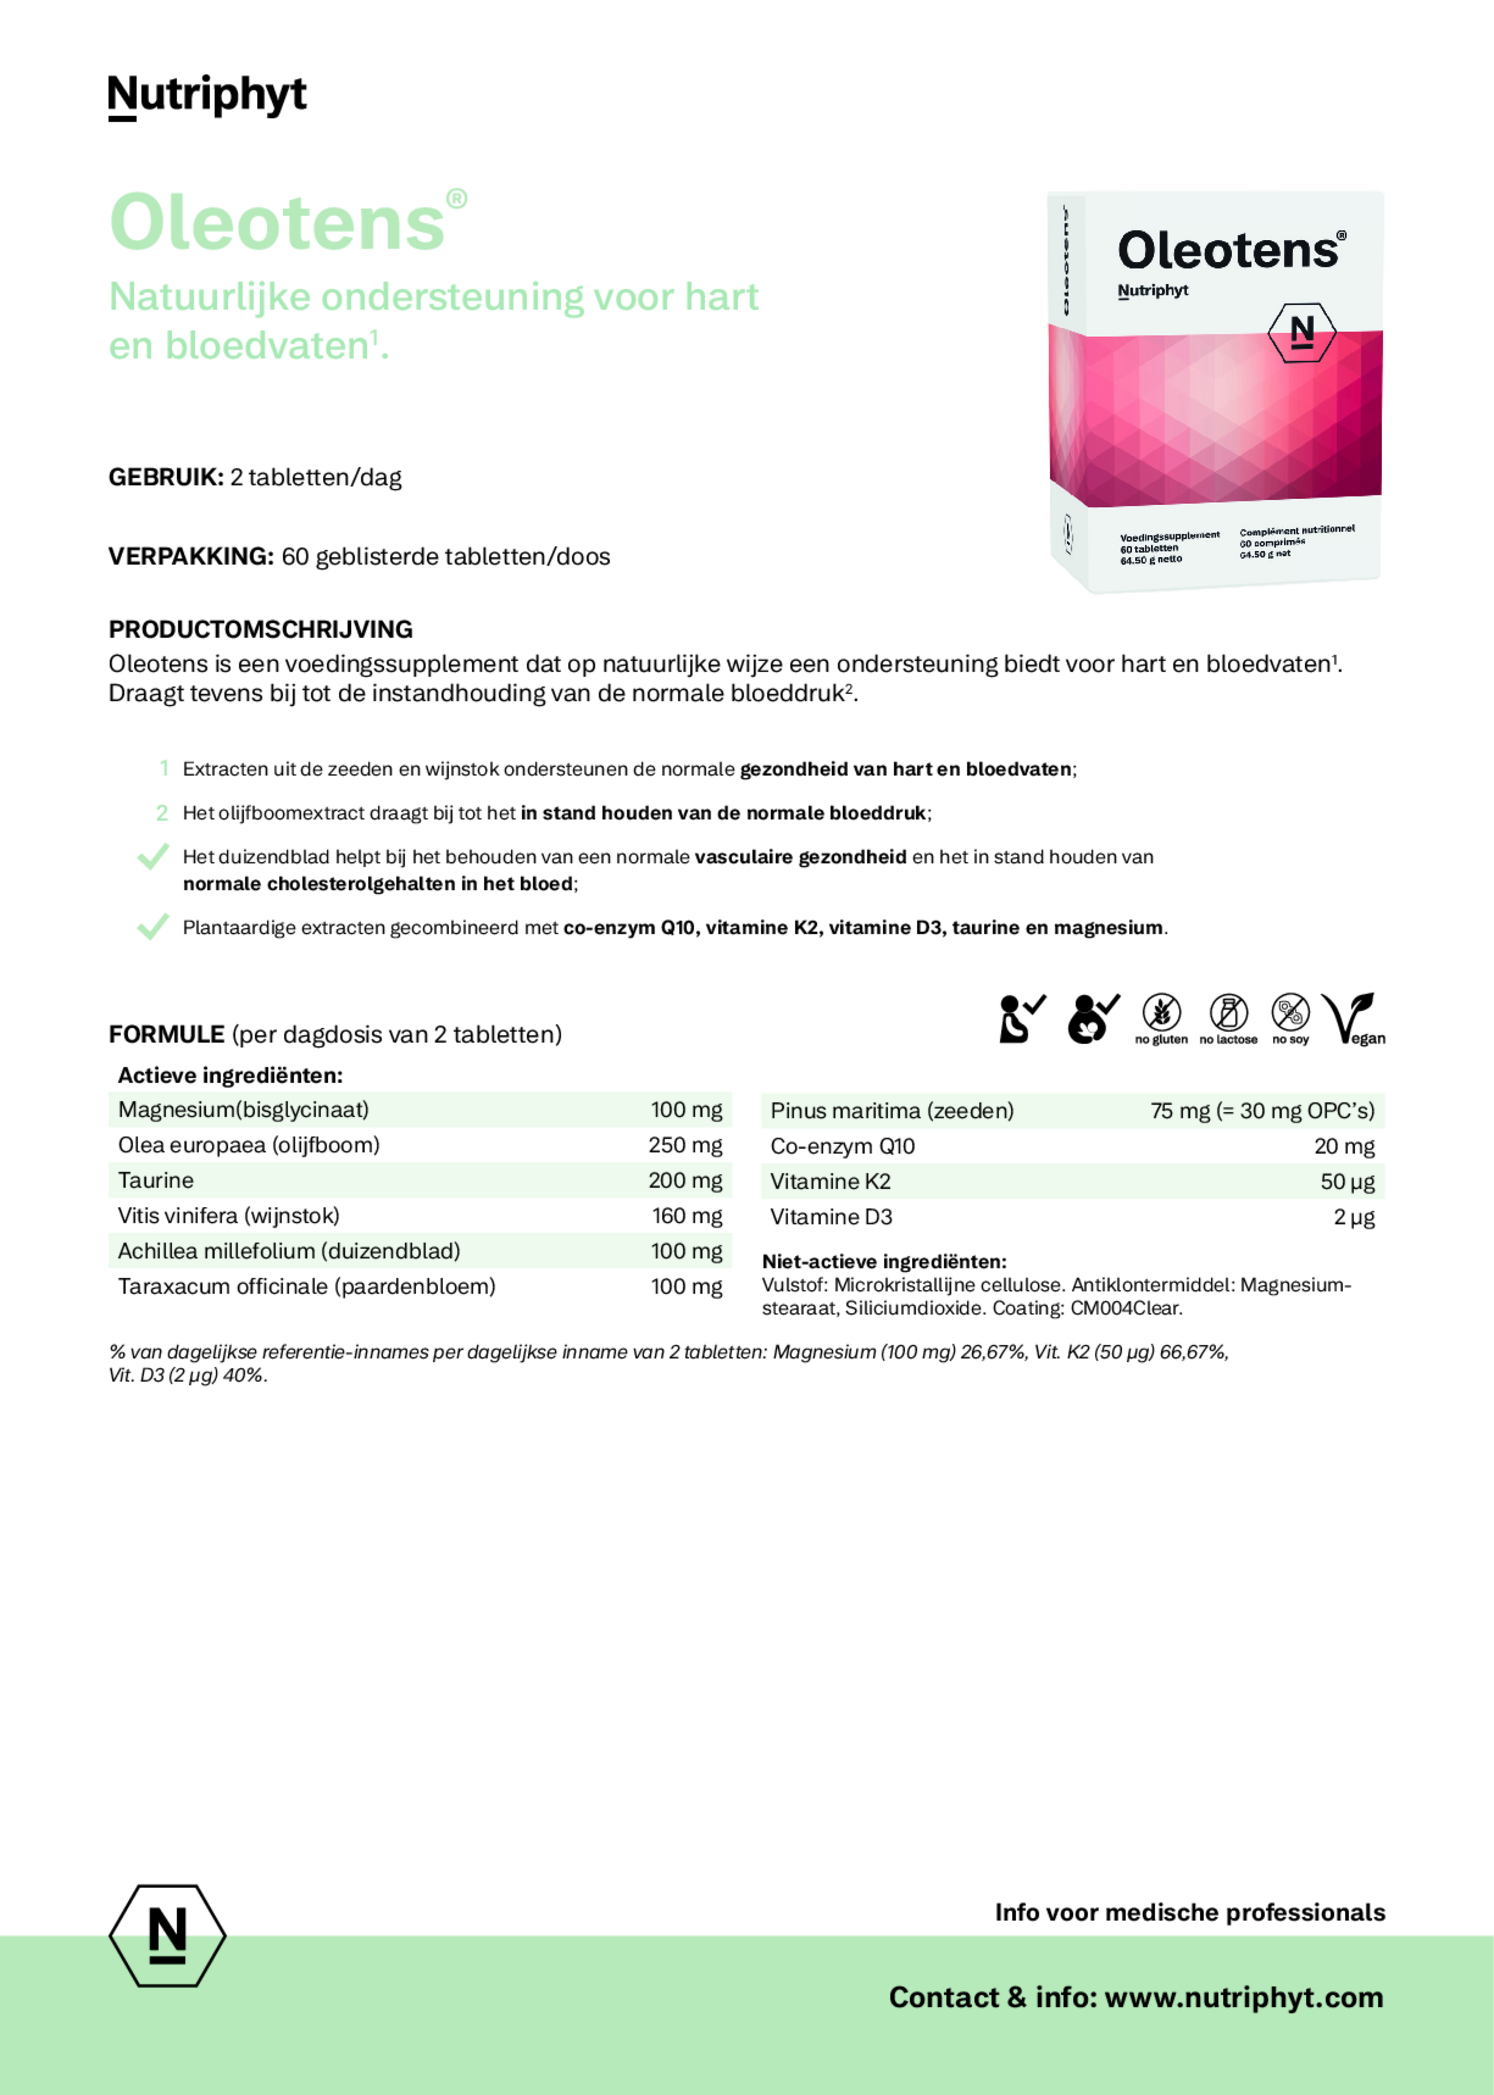 Oleotens Tabletten afbeelding van document #1, etiket